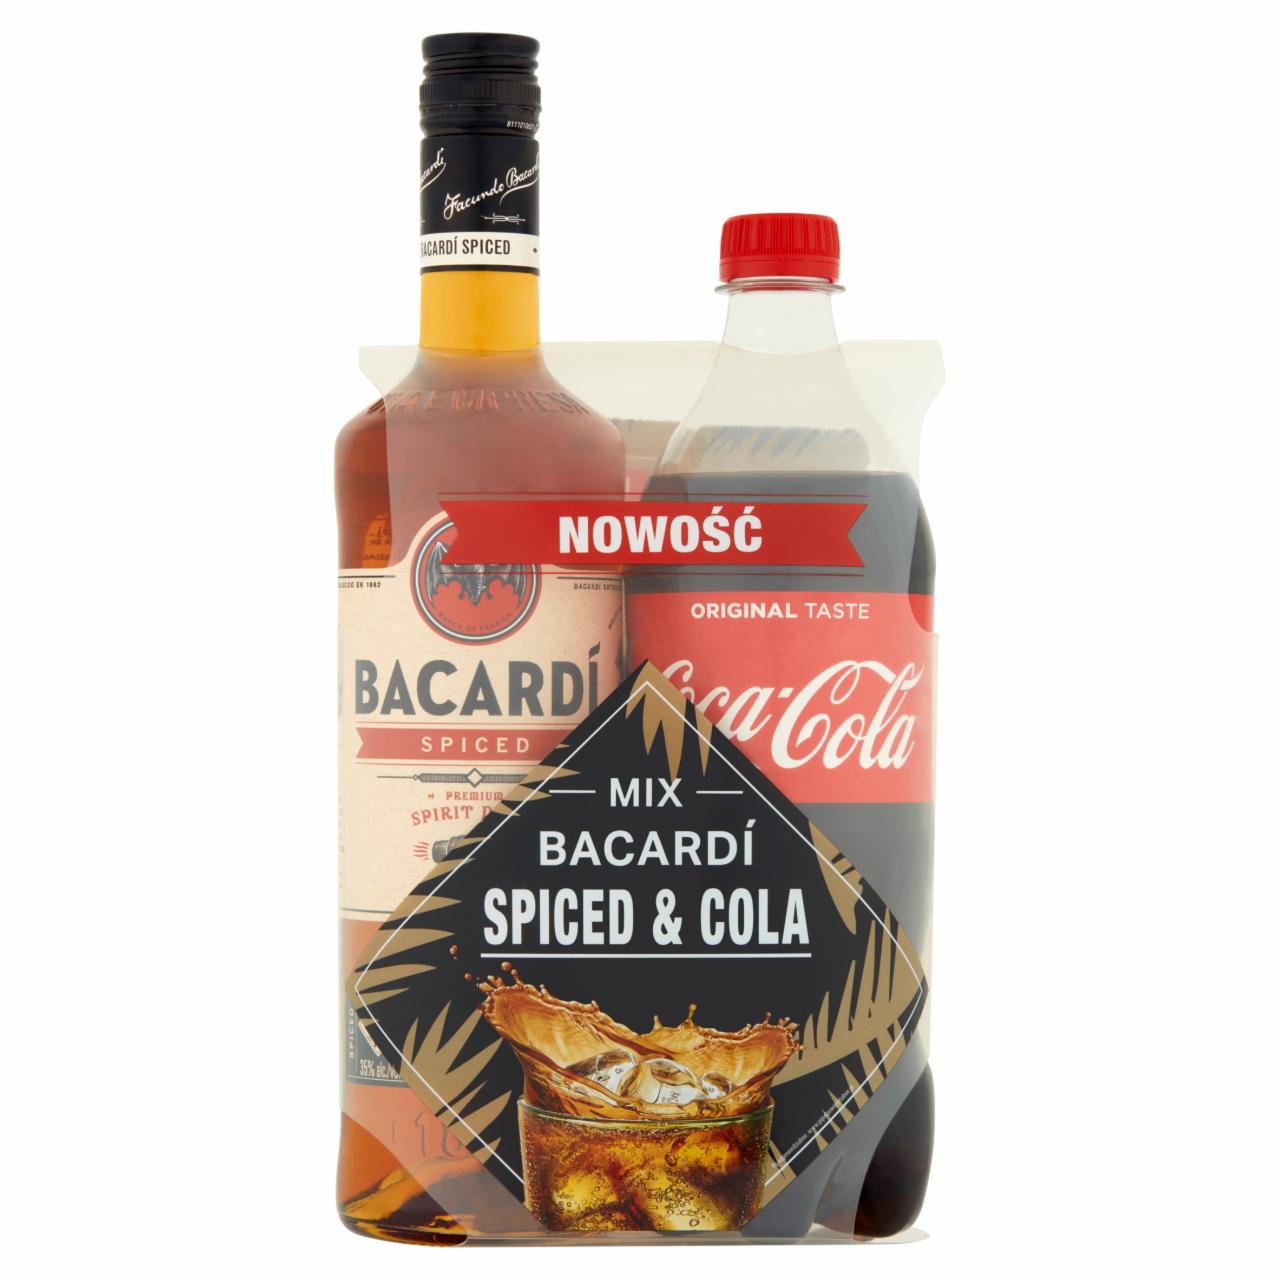 Zdjęcia - Bacardi Spiced Napój spirytusowy na bazie rumu 700 ml i Coca-Cola Napój gazowany 850 ml